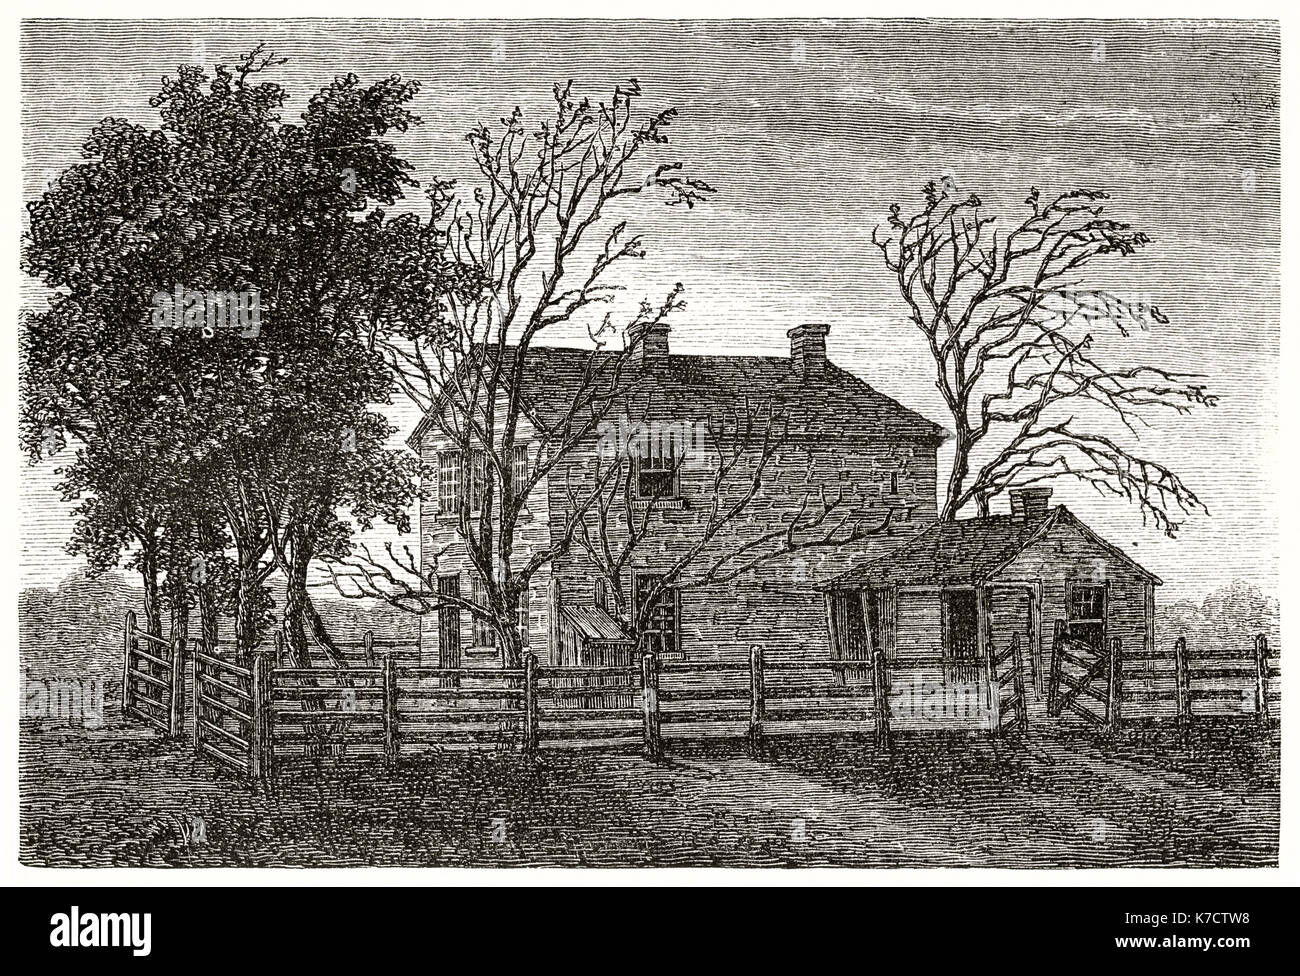 Alte Ansicht des Gefängnisses in Carthage, Illinois, in der Mormonischen prophete Smith starb. Durch Ferogio, Publ. bei Le Tour du Monde, Paris, 1862 Stockfoto